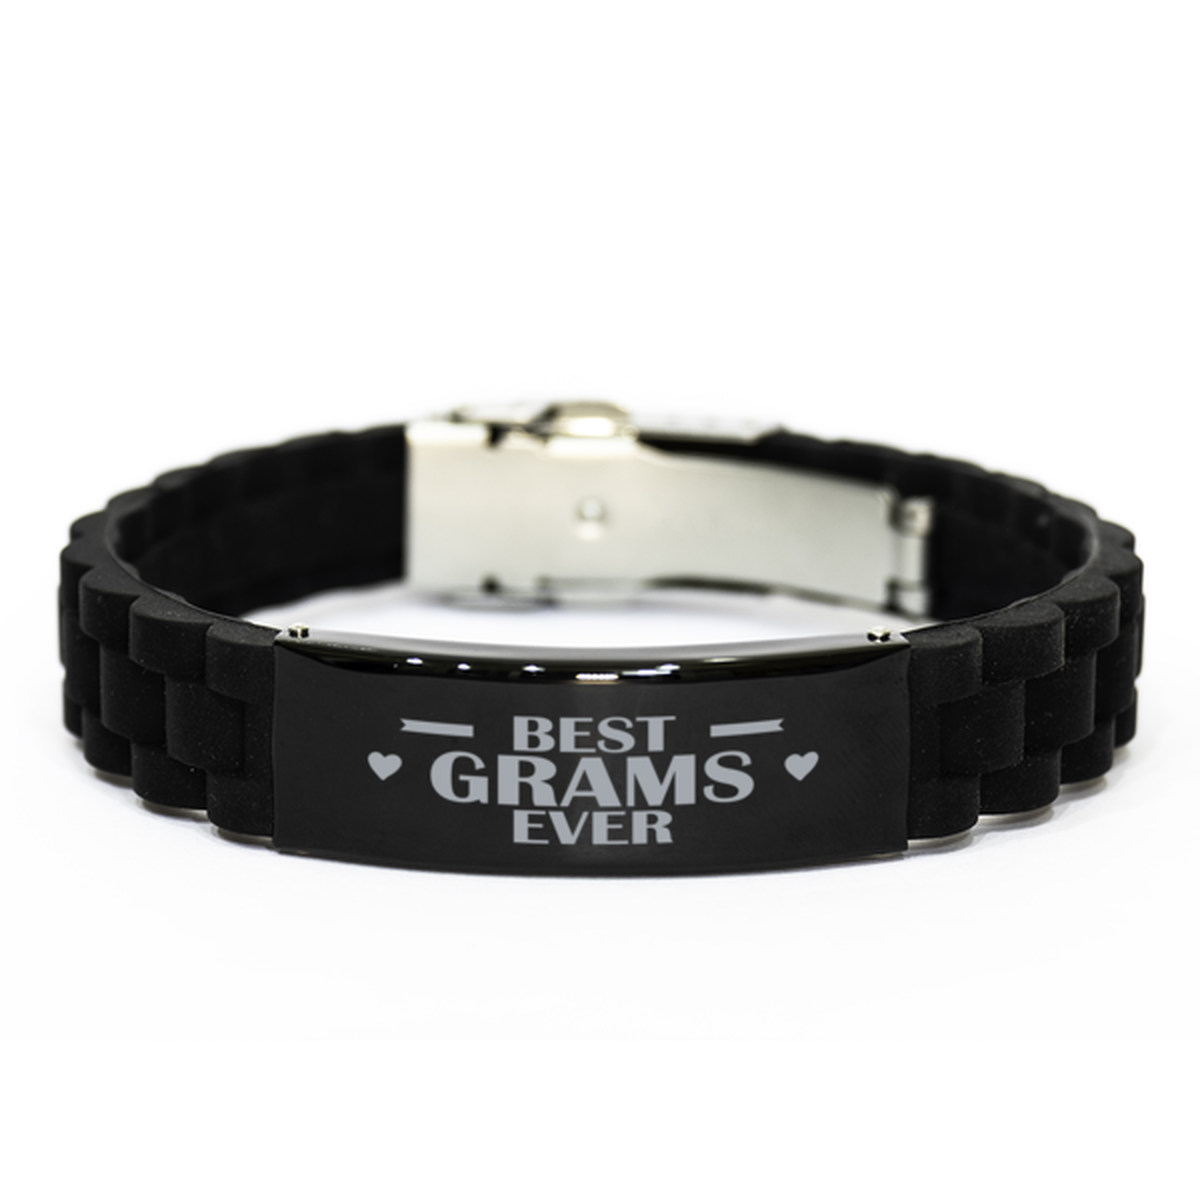 Best Grams Ever Grams Gifts, Funny Black Engraved Bracelet For Grams, Family Gifts For Women